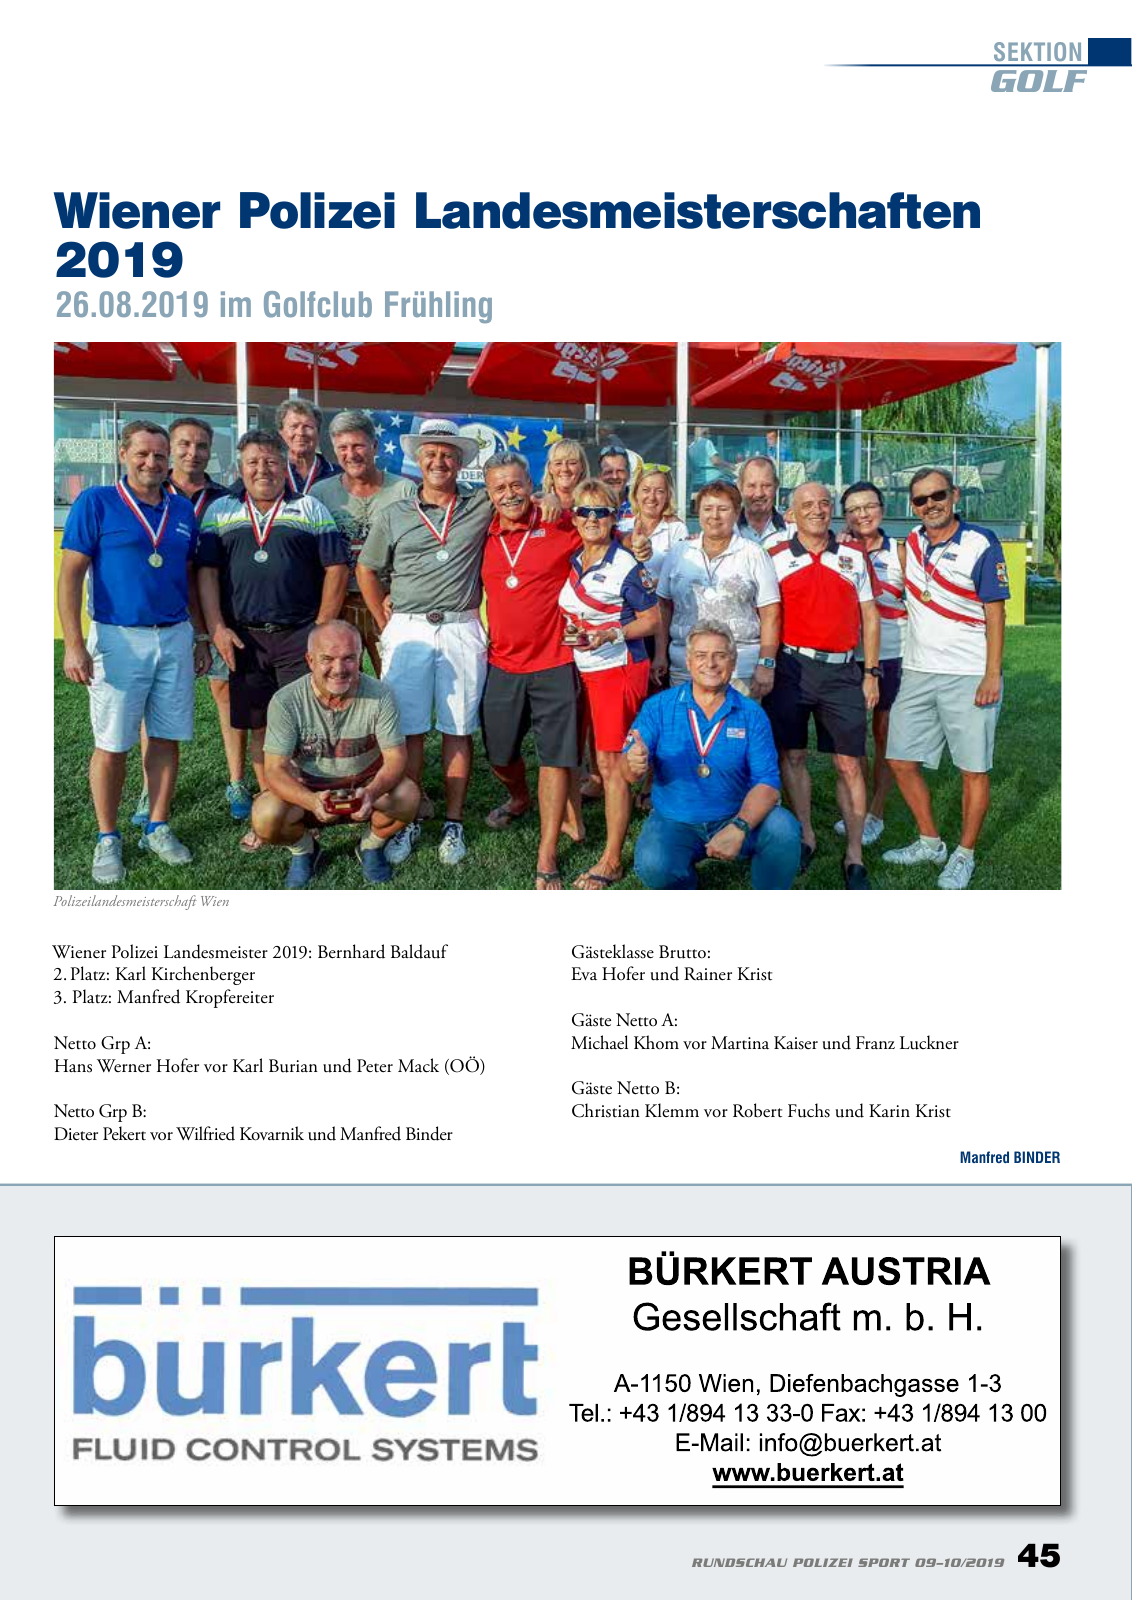 Vorschau Rundschau Polizei Sport 09-10/2019 Seite 45